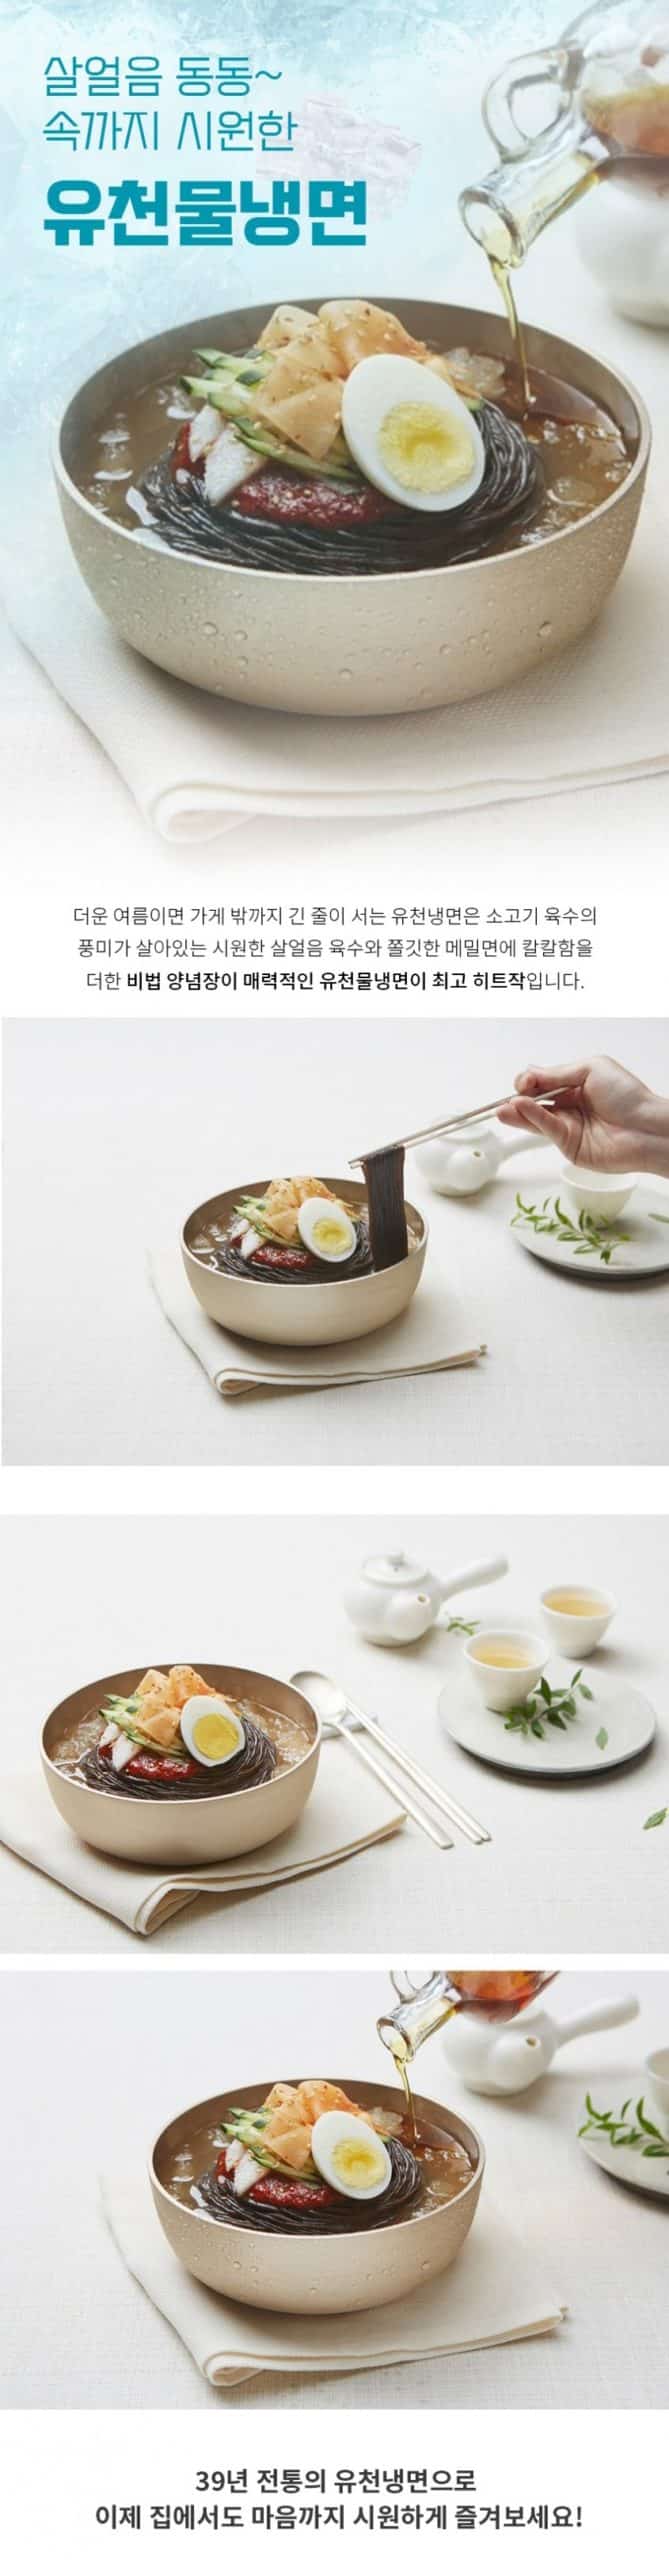 韓國食品-[You Cheon] Cold Noodle 1100g